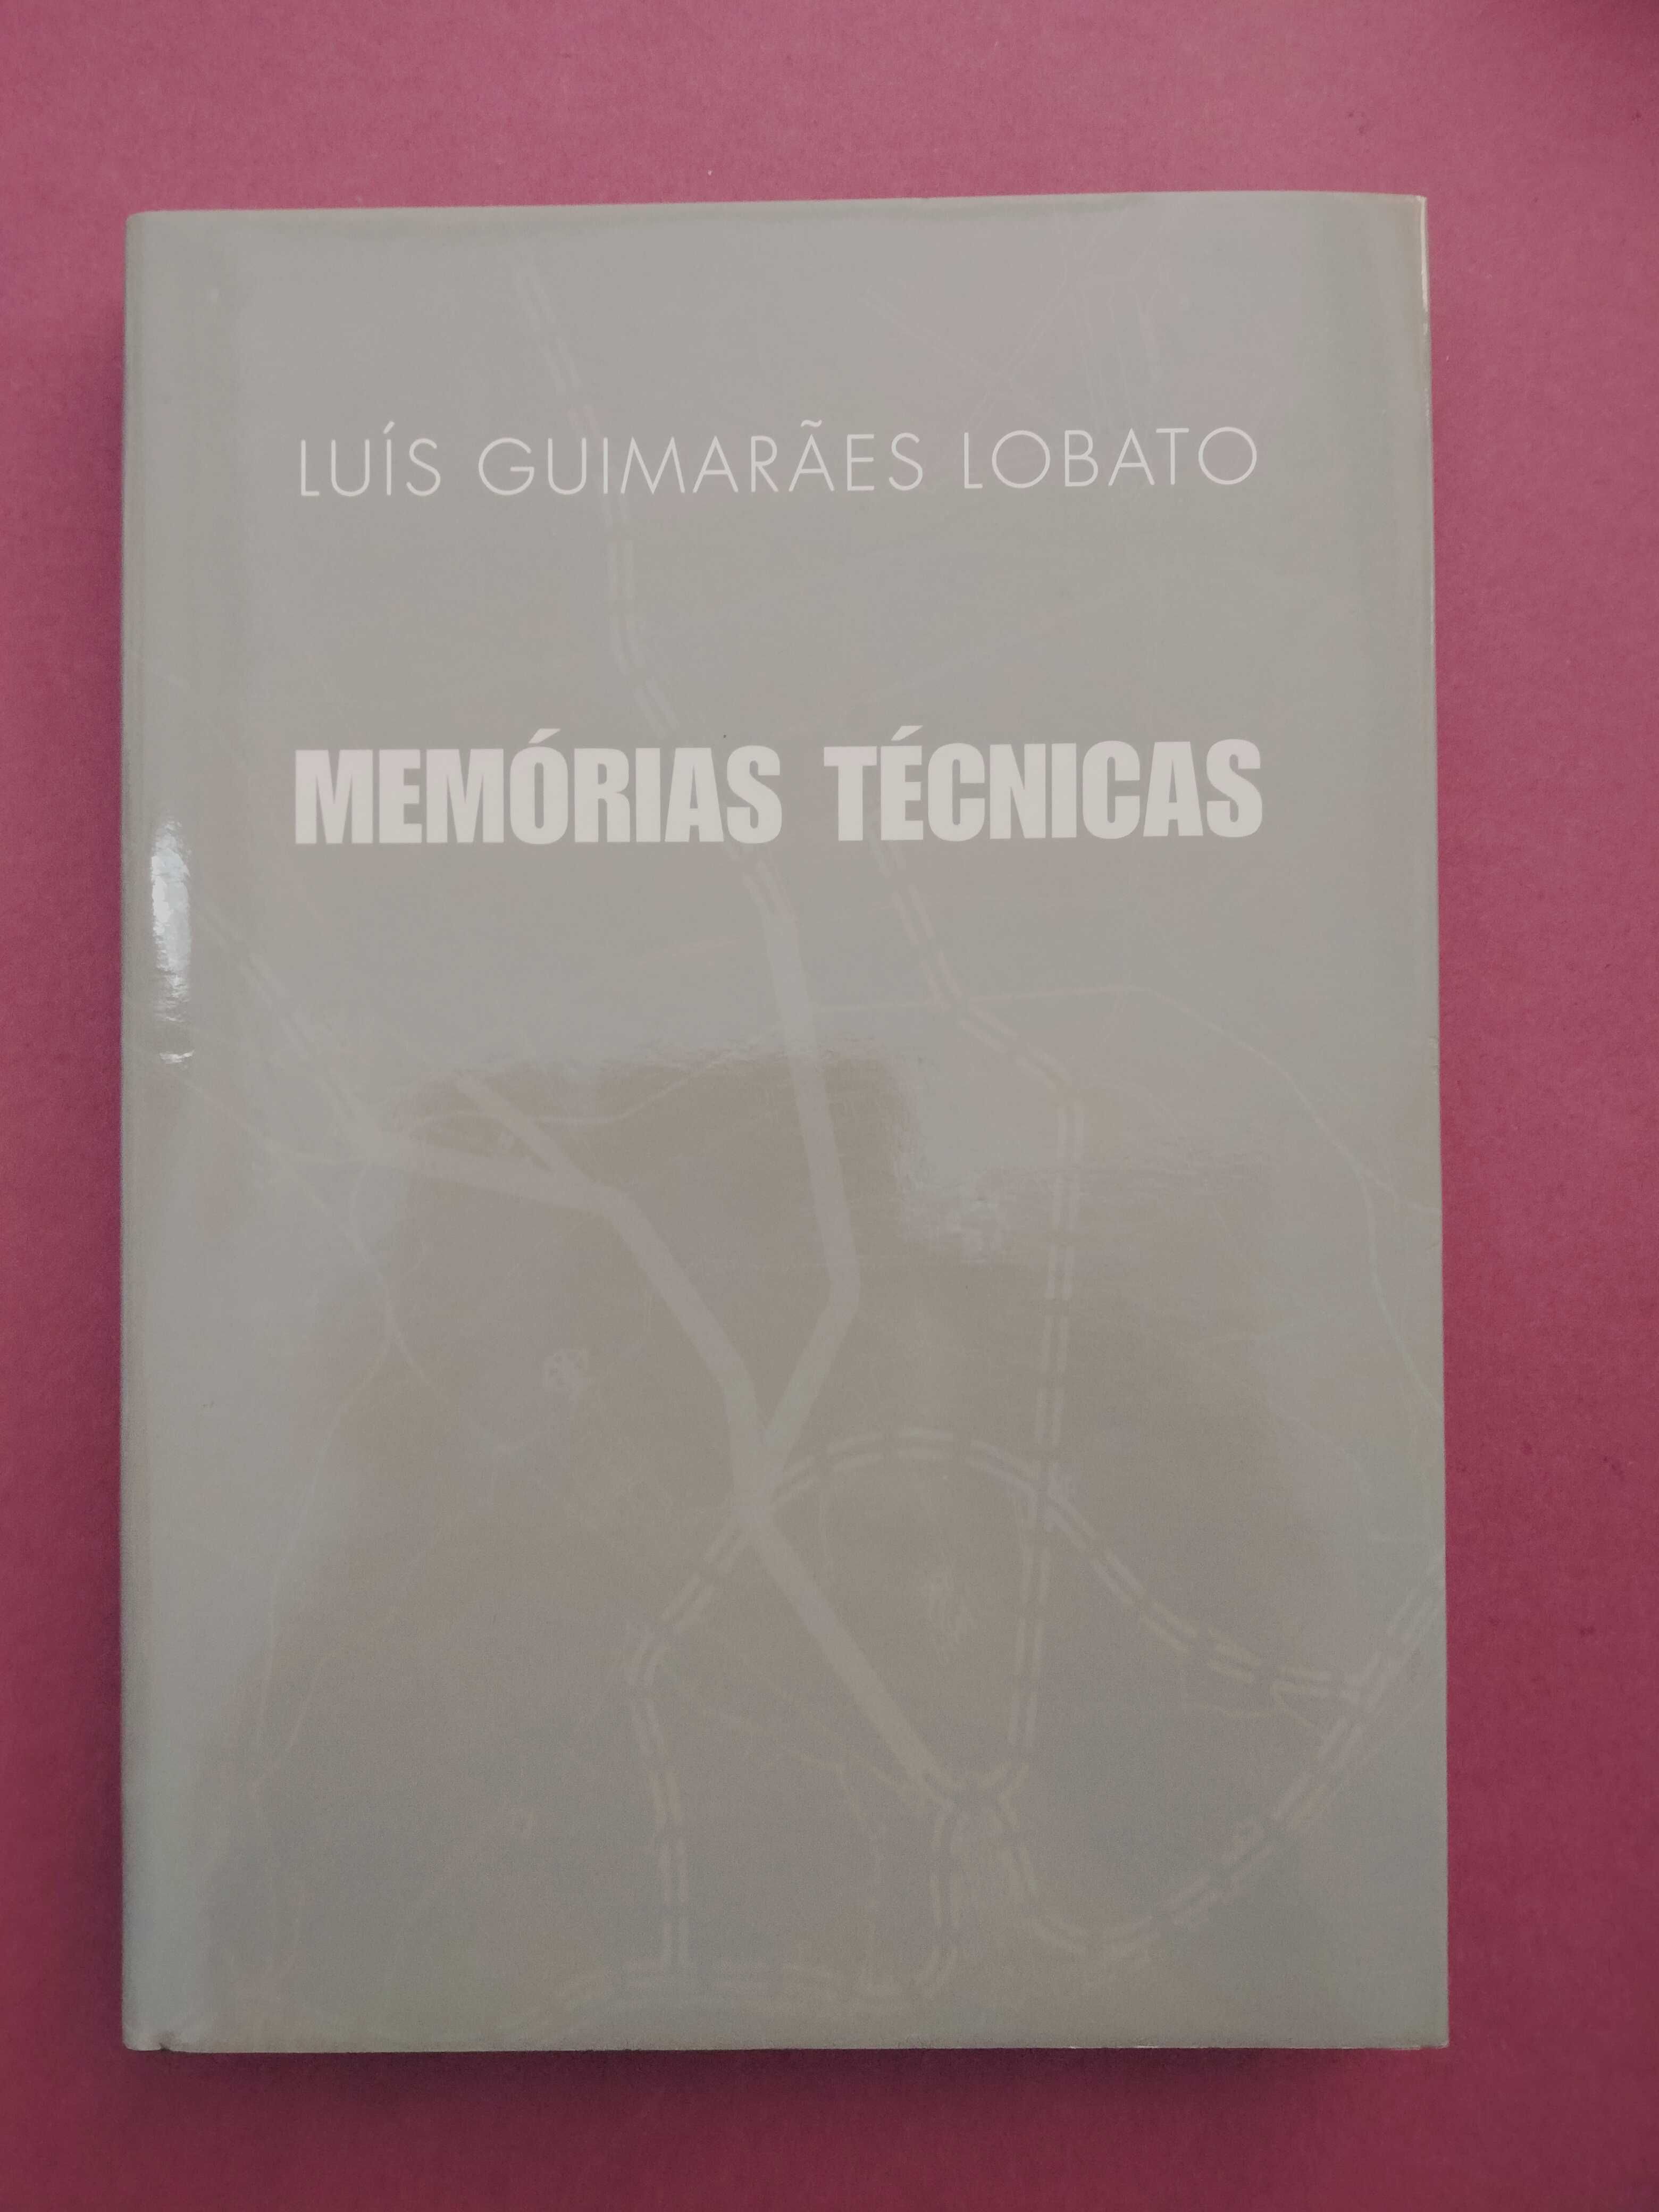 Memórias Técnicas - Luís Guimarães Lobato